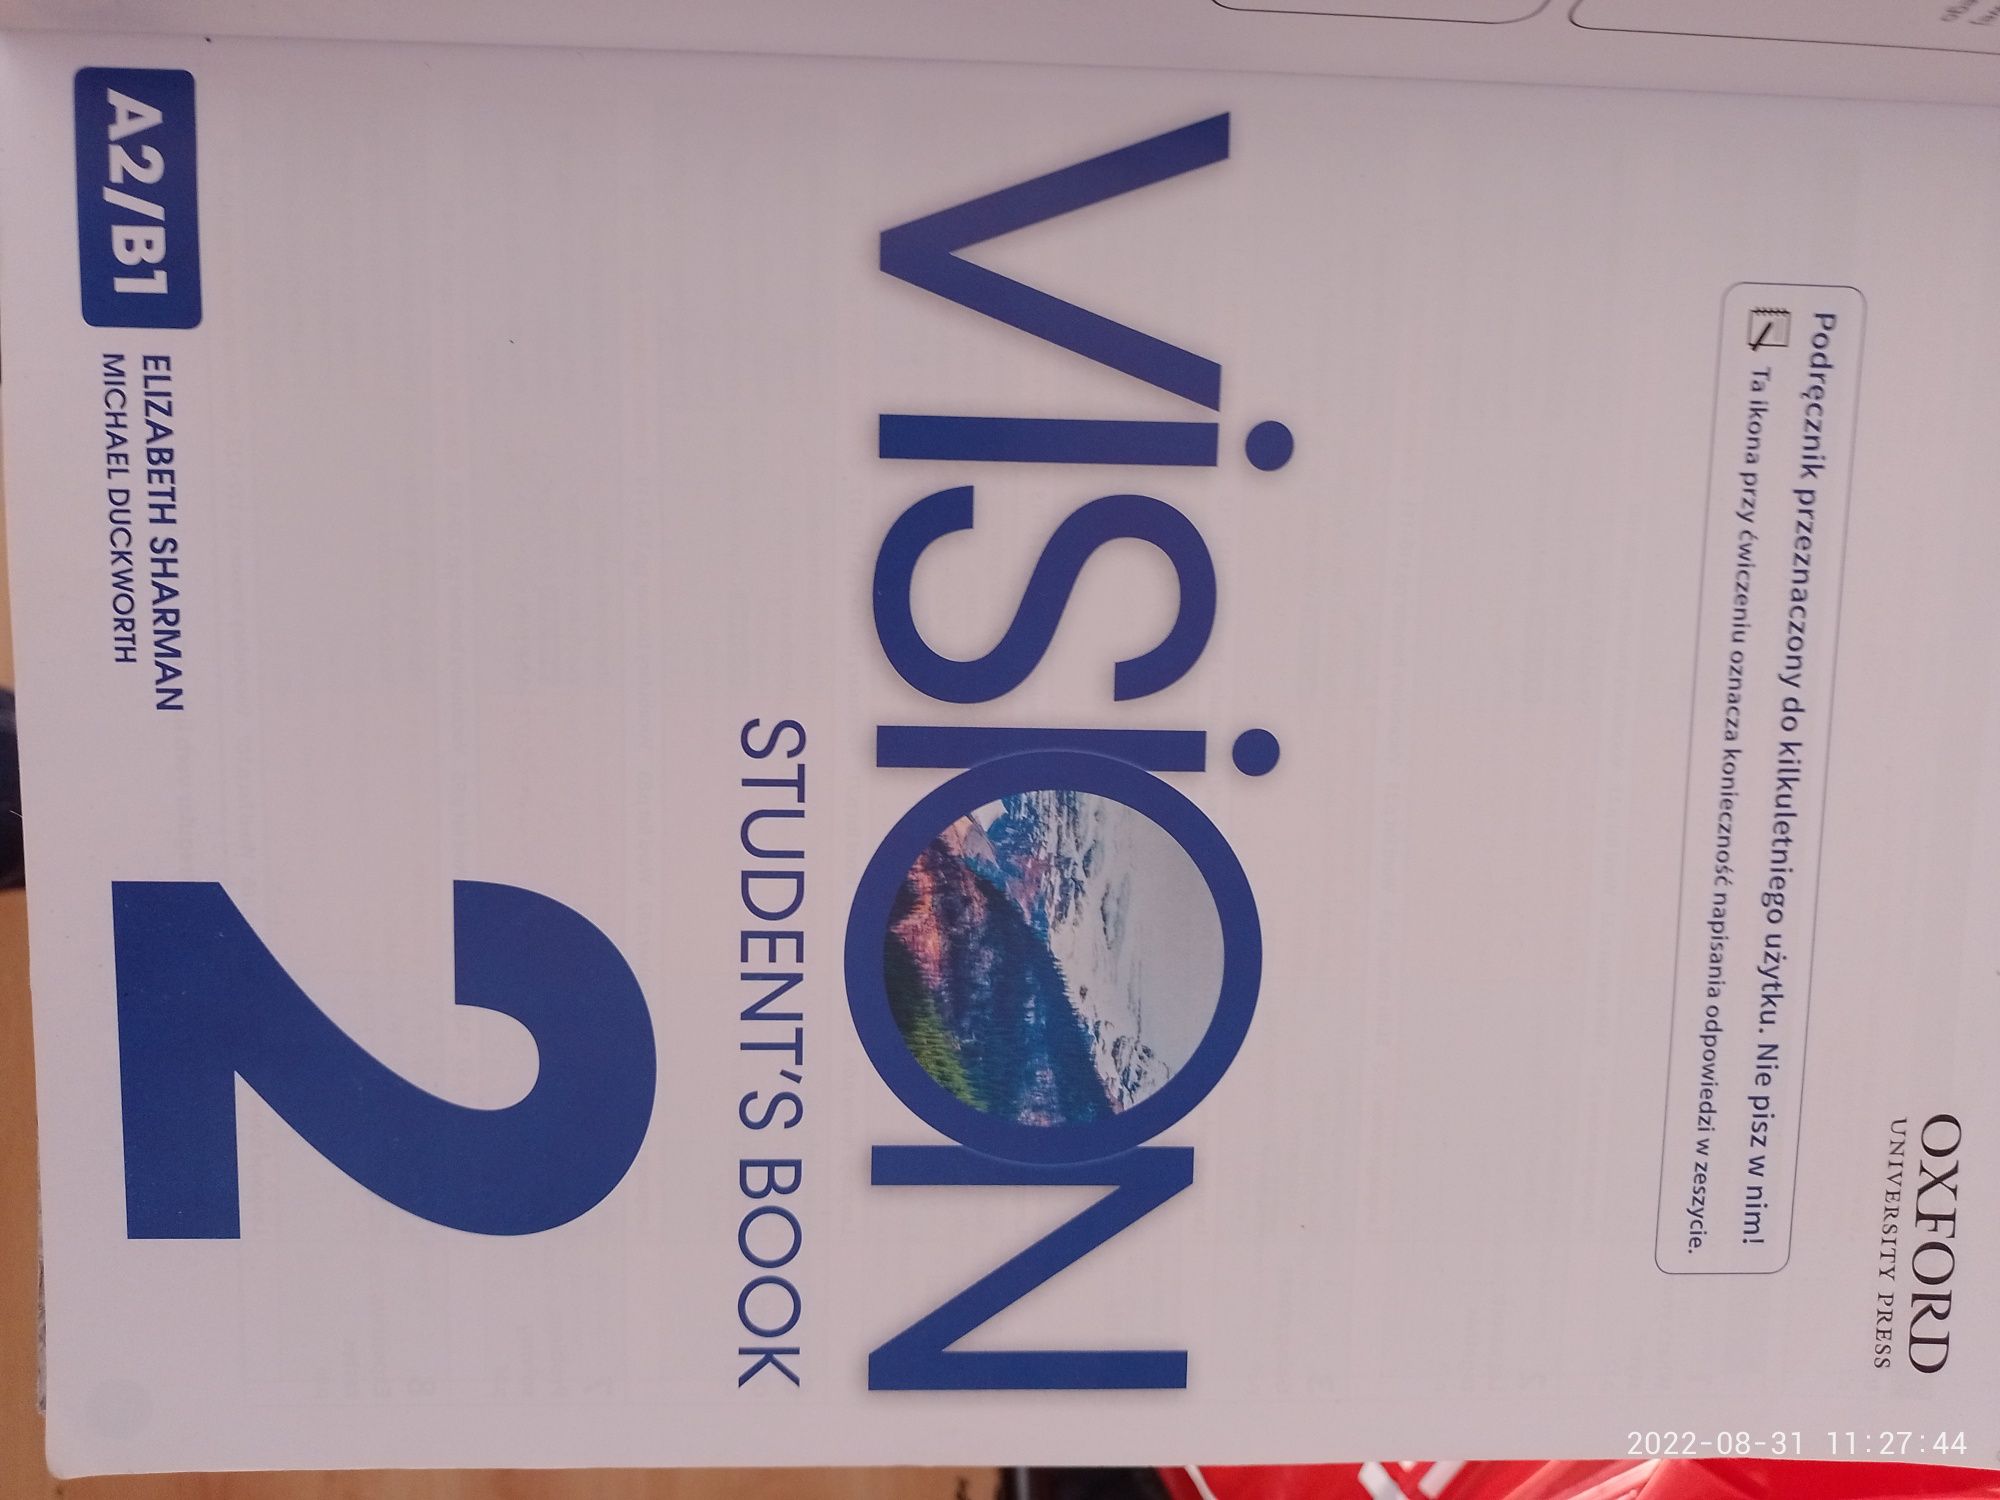 Vision 2  podręcznik do języka angielskiego